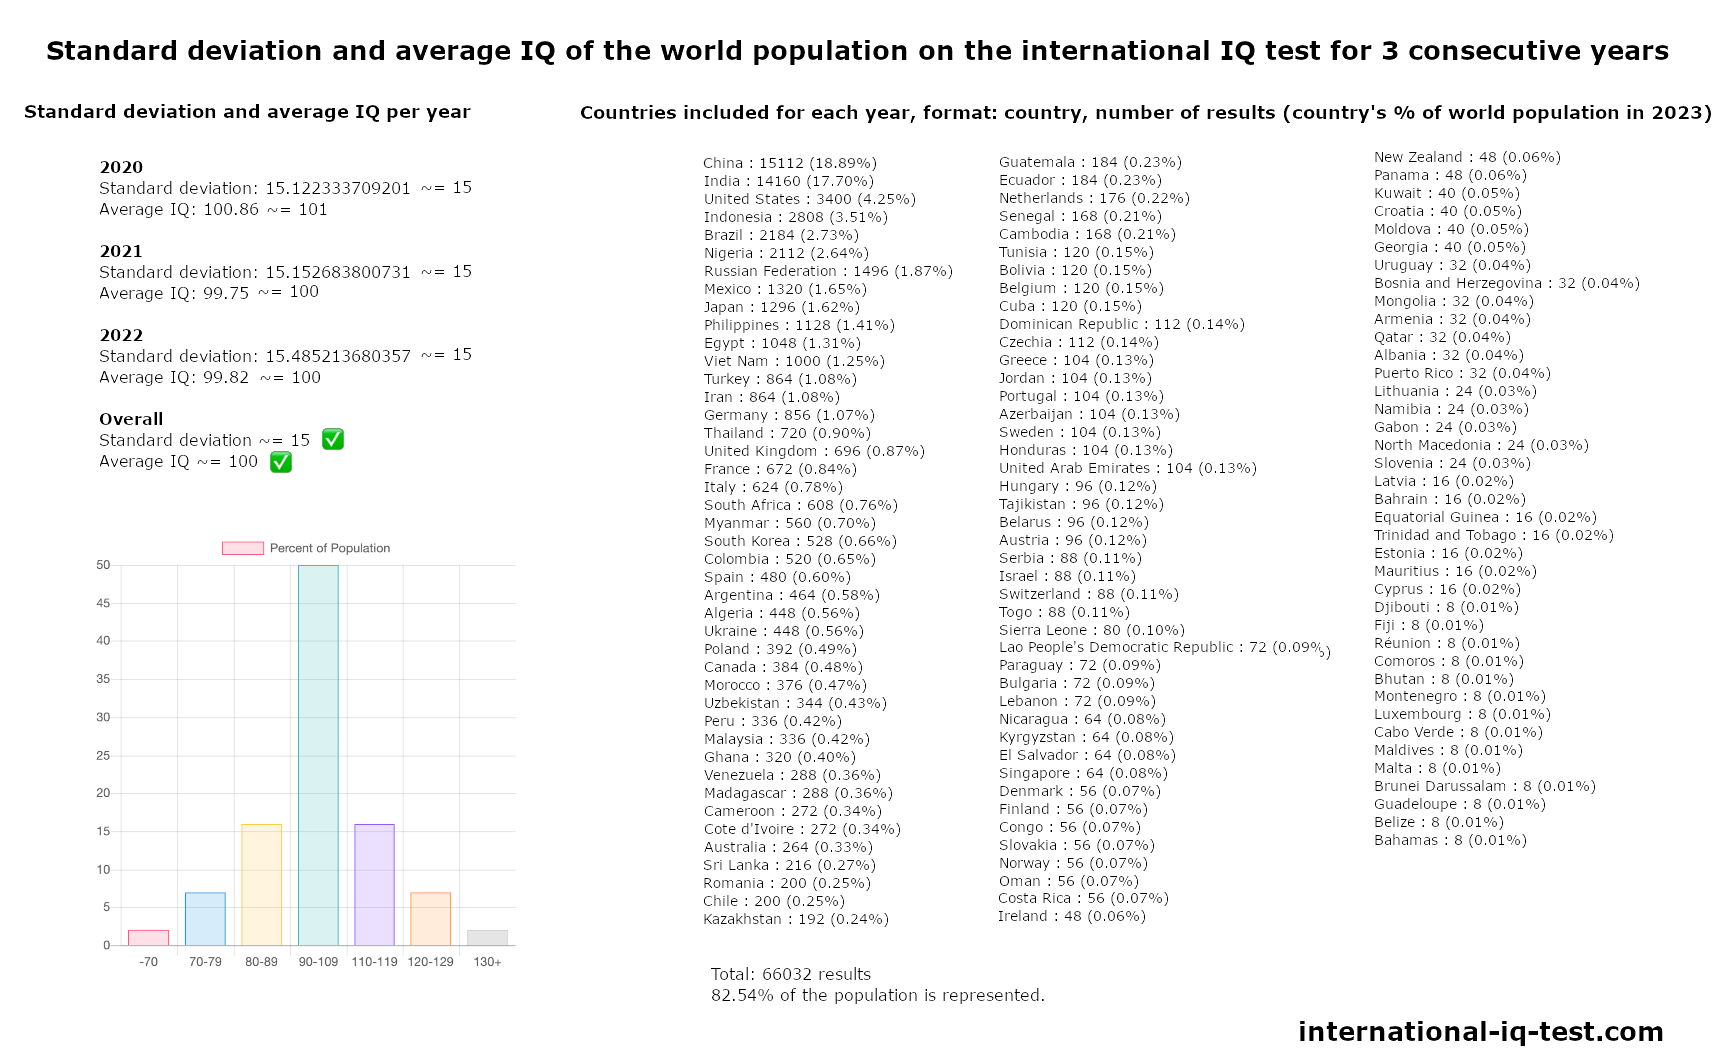 Abaterea standard și IQ-ul mediu al populației mondiale la testul internațional de IQ din anii 2020, 2021 și 2022